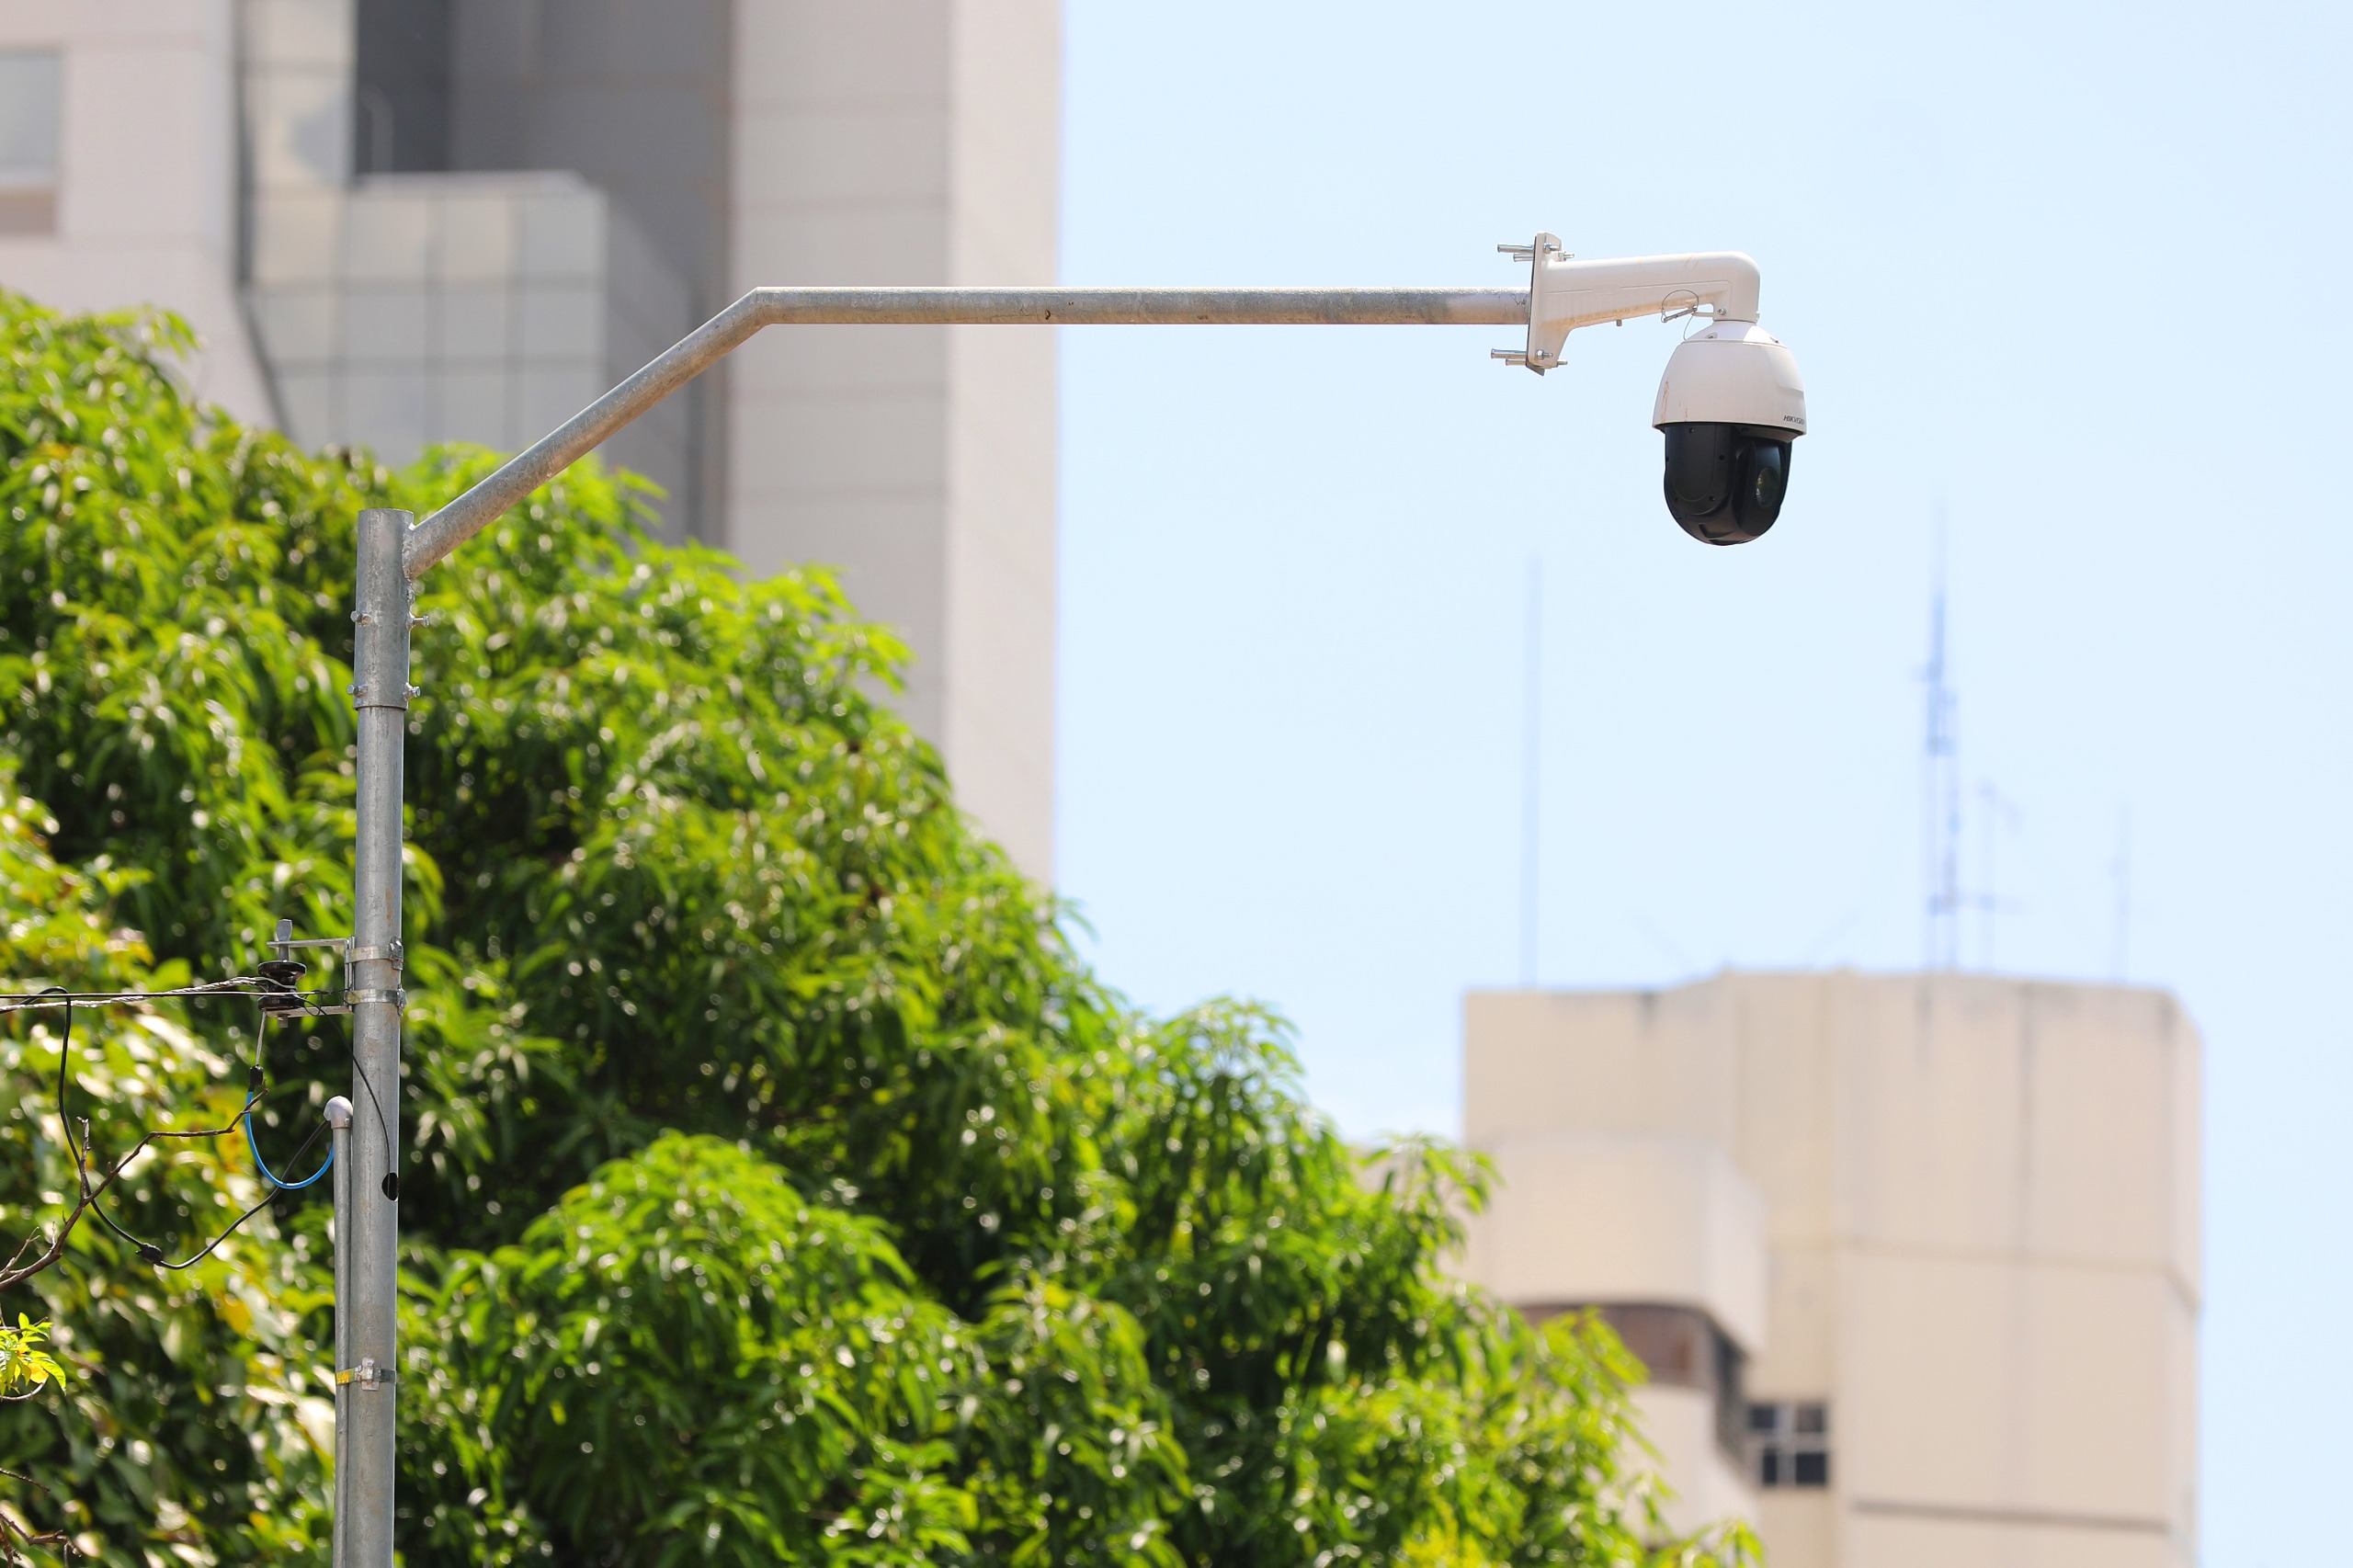 Câmeras de segurança devem permitir o reconhecimento facial de procurados pela justiça